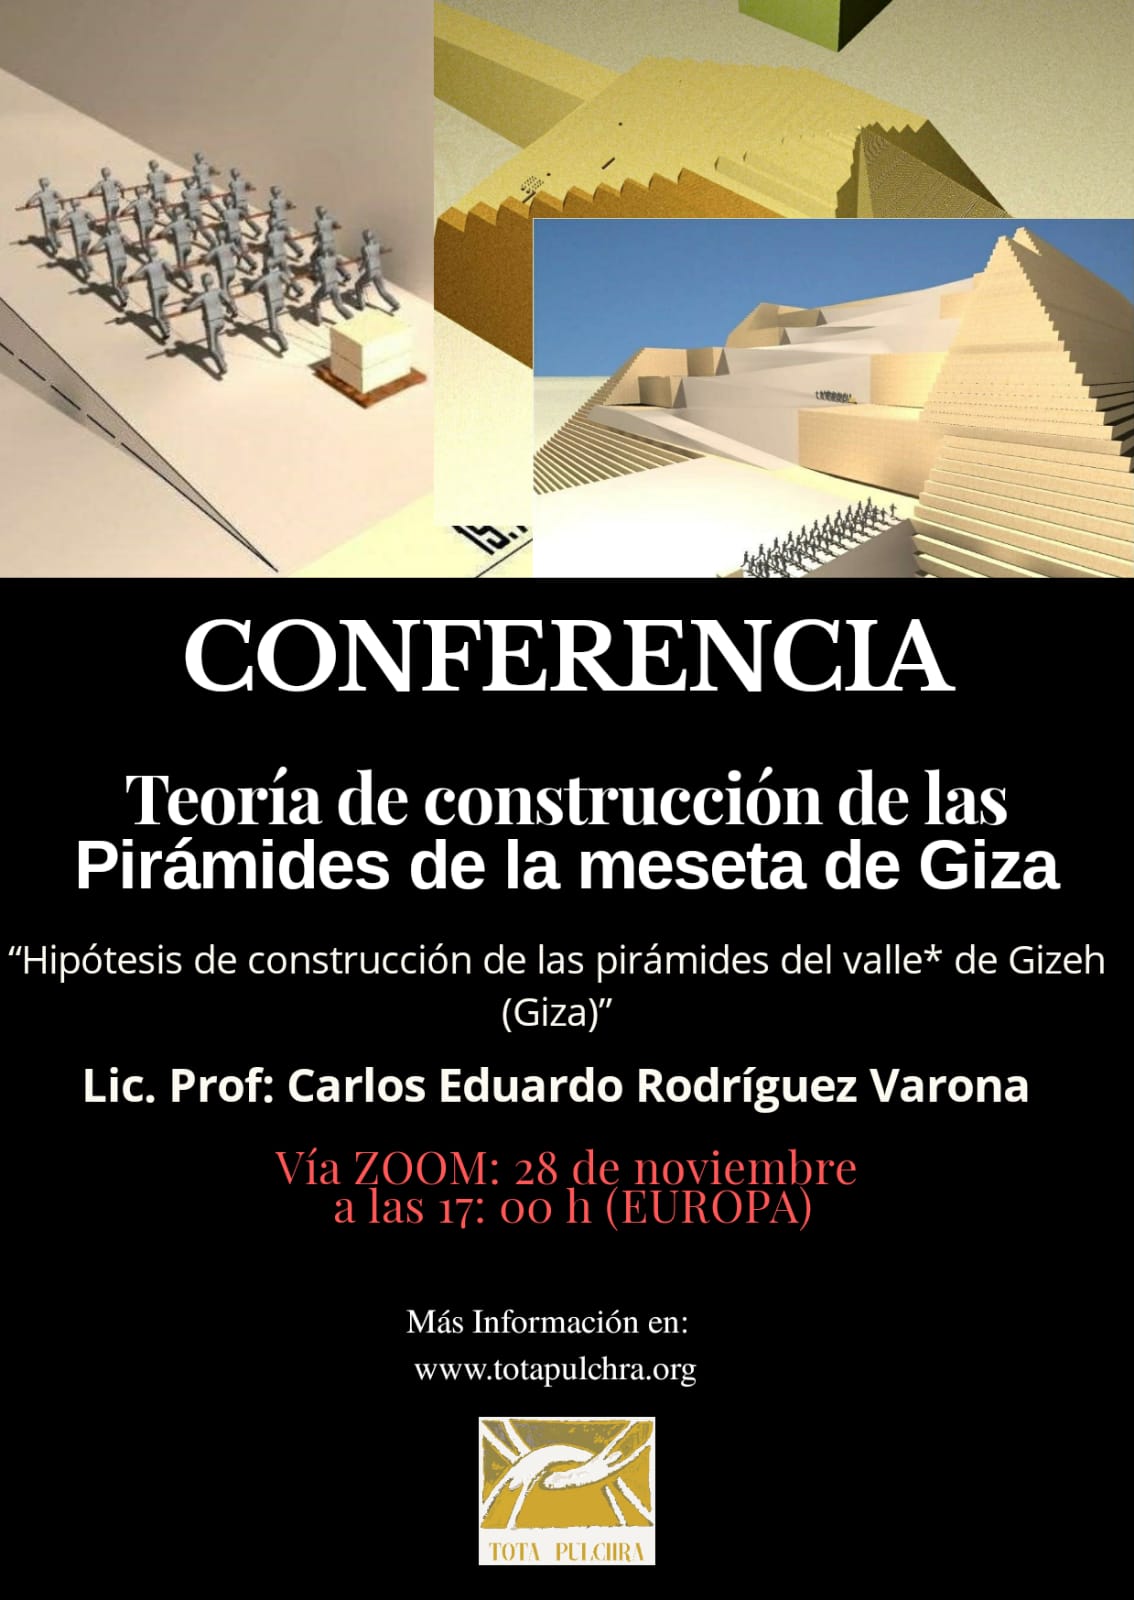 Conferencia: Teoría de la Construcción de las Pirámides de la Meseta de Guiza.